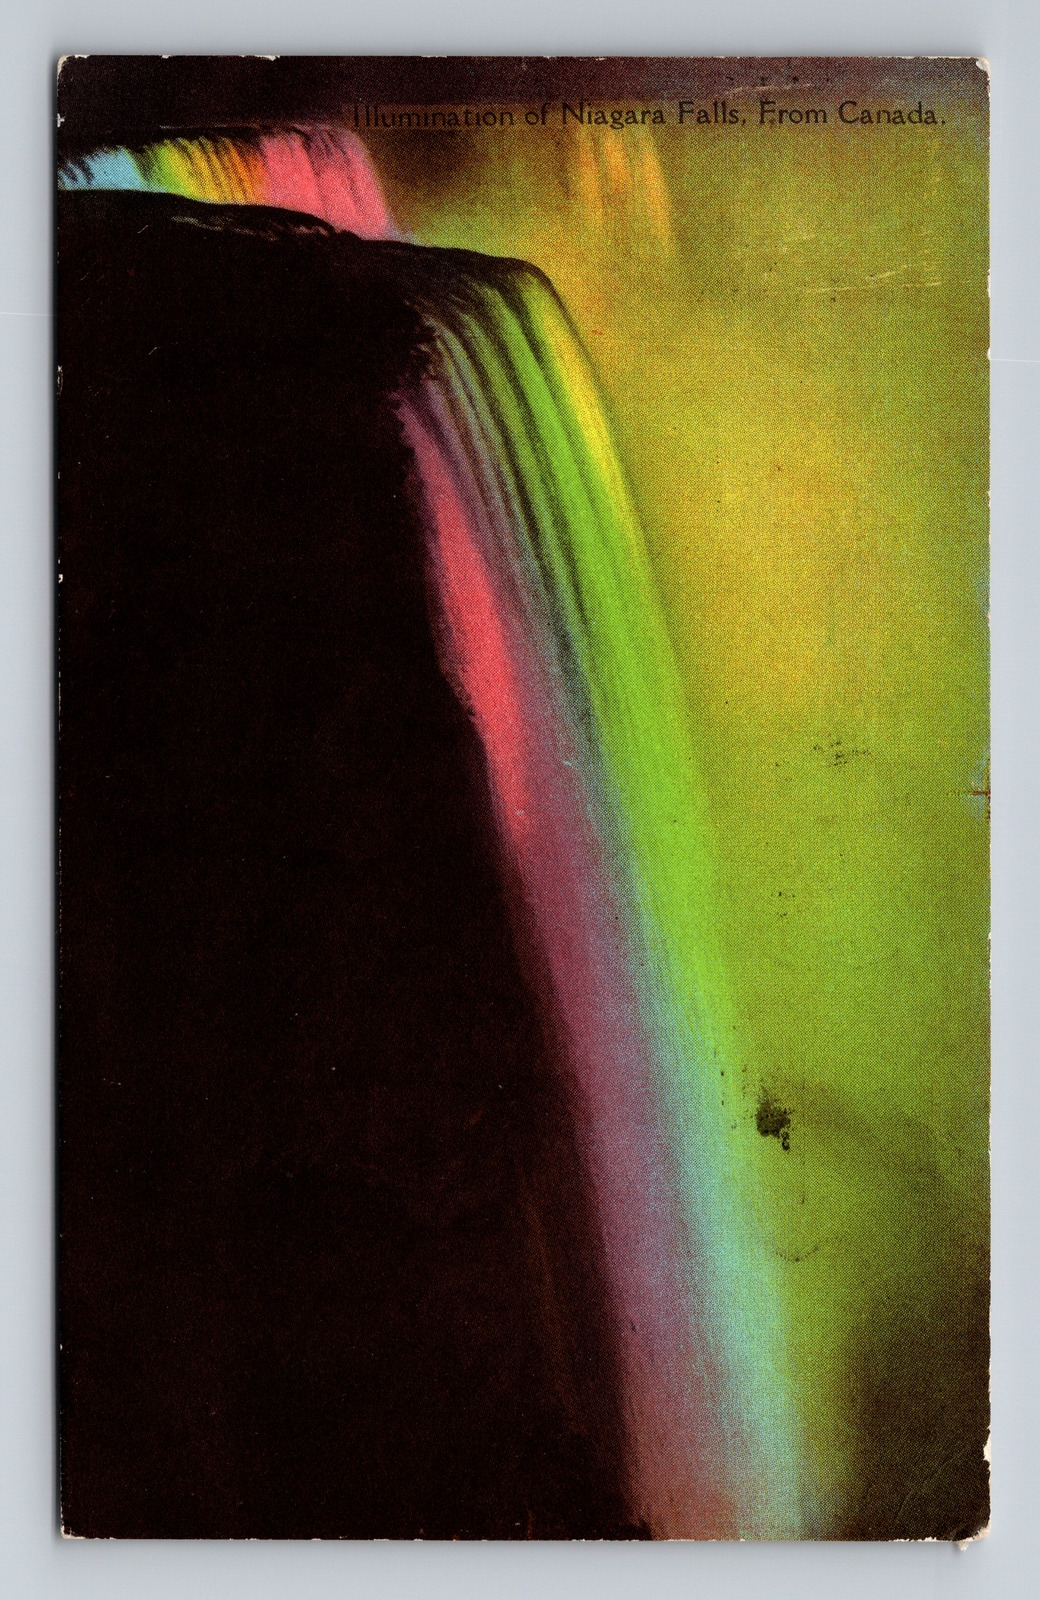 c1928 DB Postcard Niagara Falls Illumination of Niagara Falls